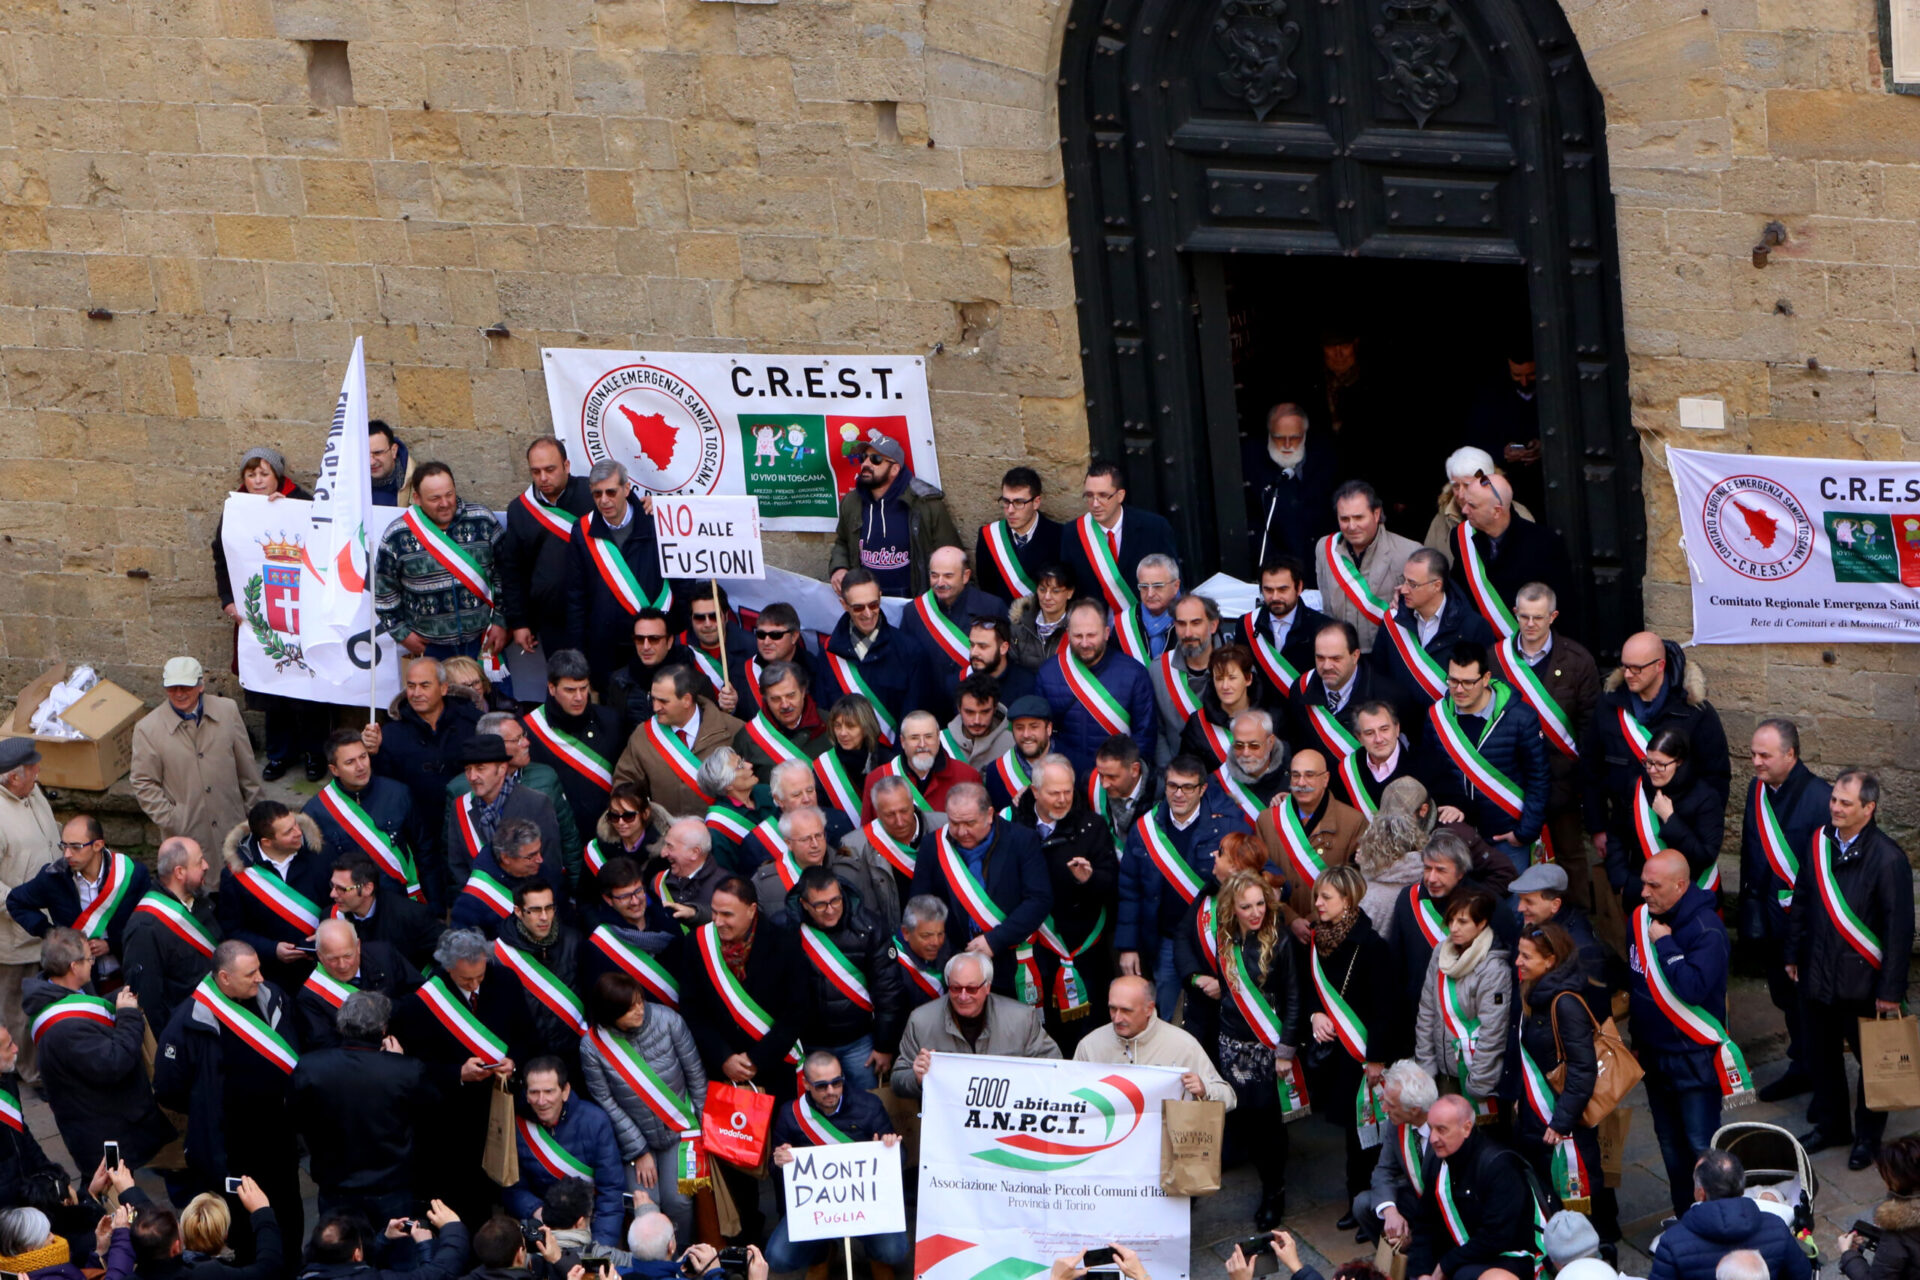 Orgoglio Comune. A Volterra Sindaci di tutta Italia approvano il “Manifesto dei cento”. No alle fusioni, sì alle autonomie locali